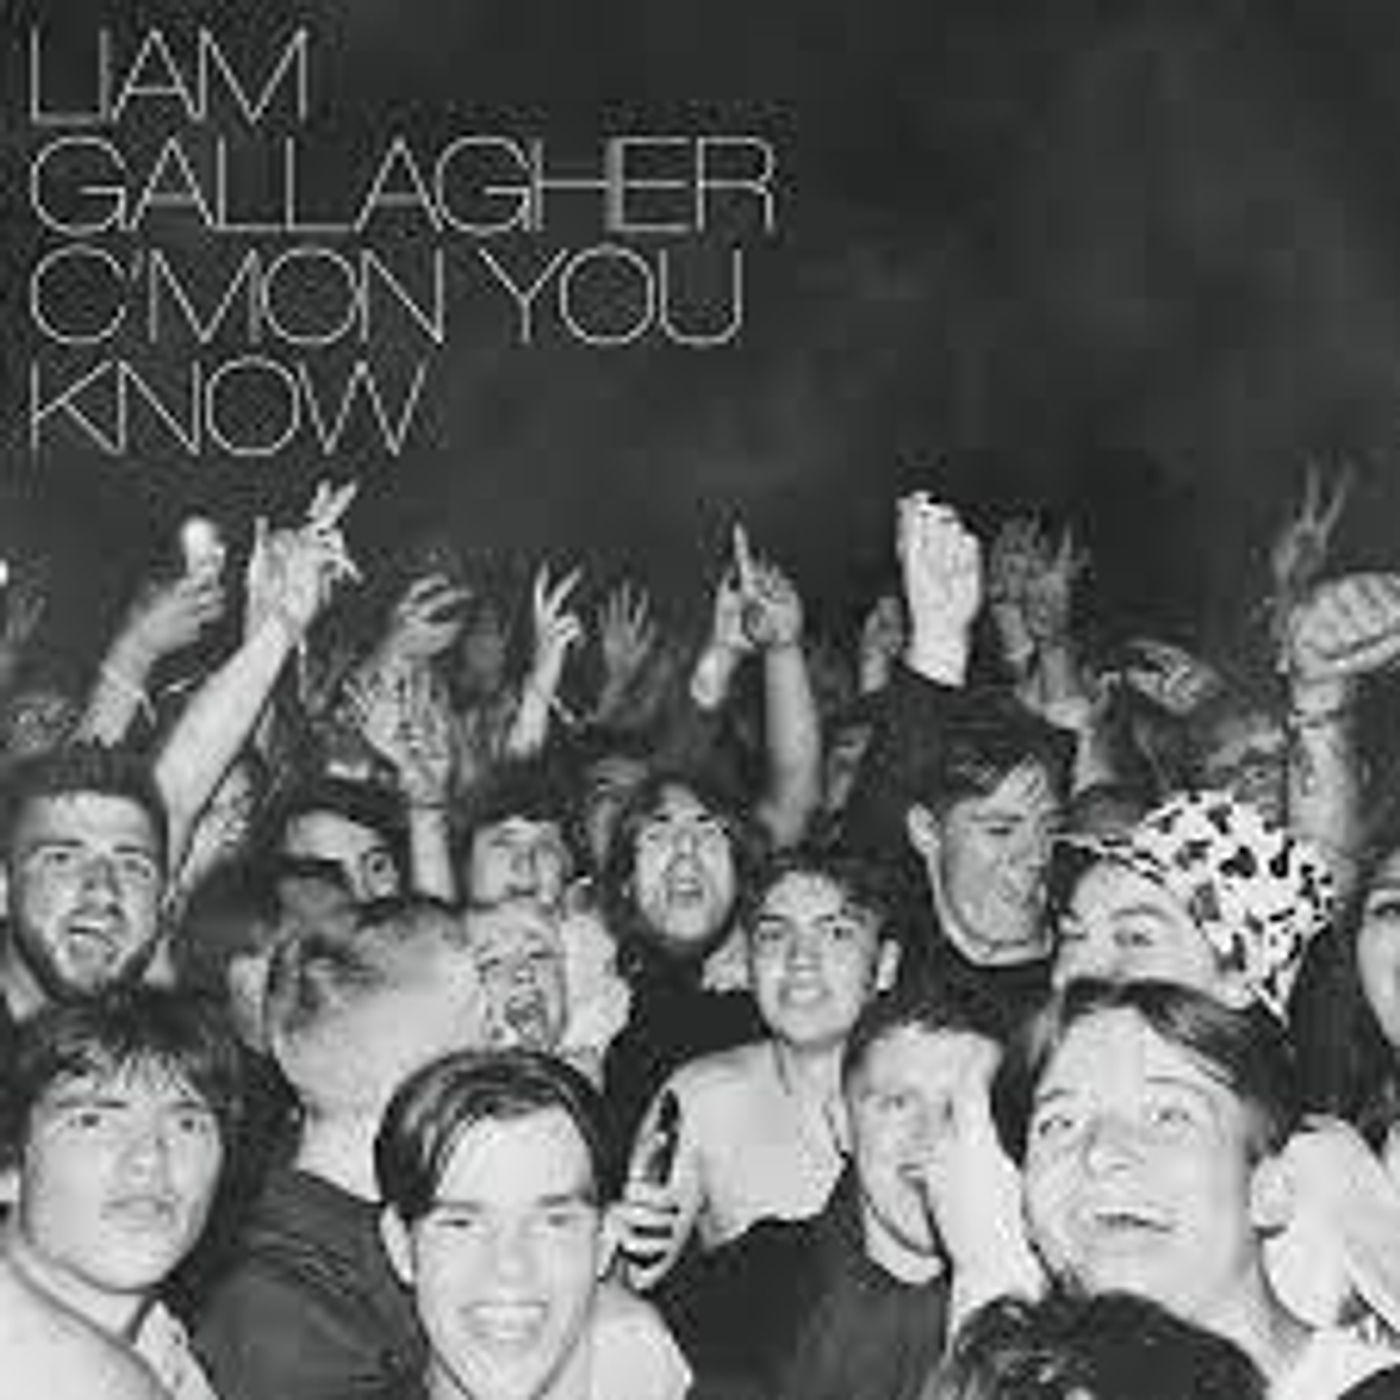 188: C'Mon You Know Album Review!